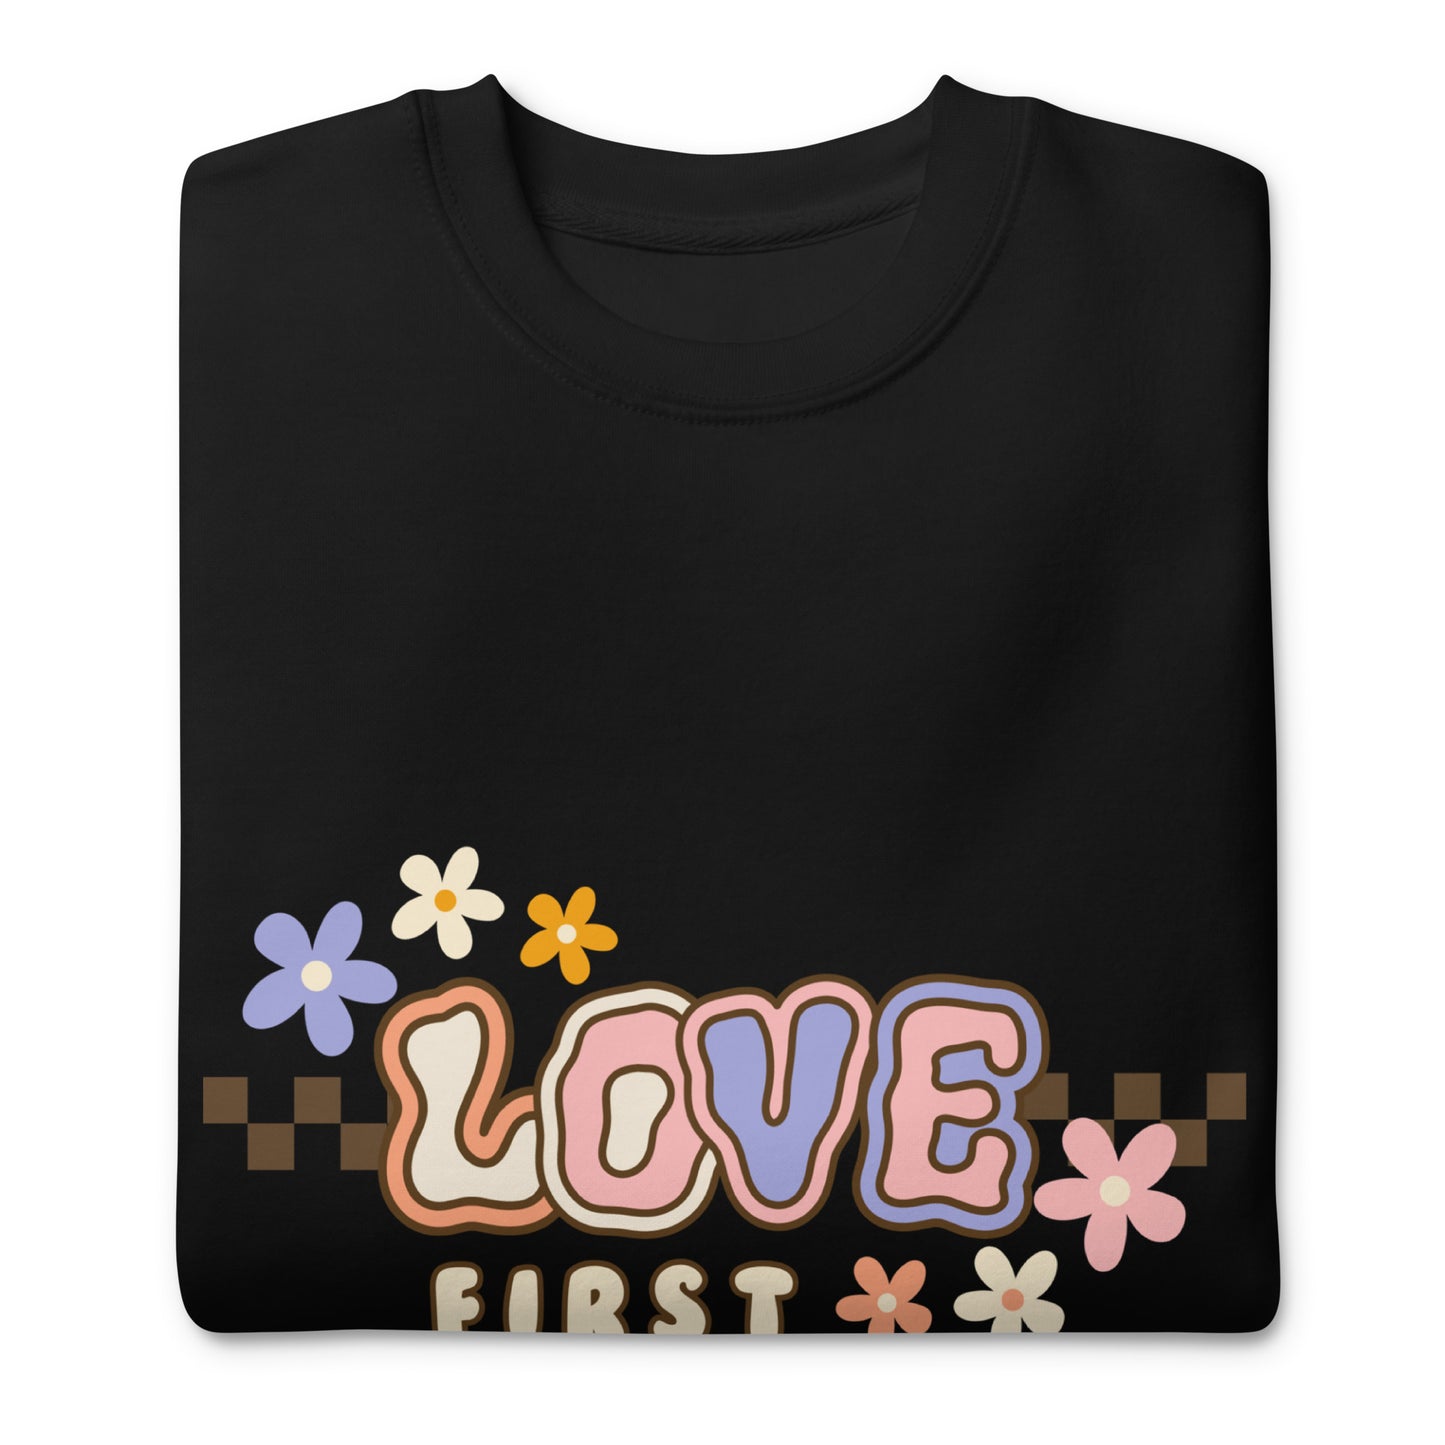 Unisex Premium Sweatshirt - LOVE FIRST